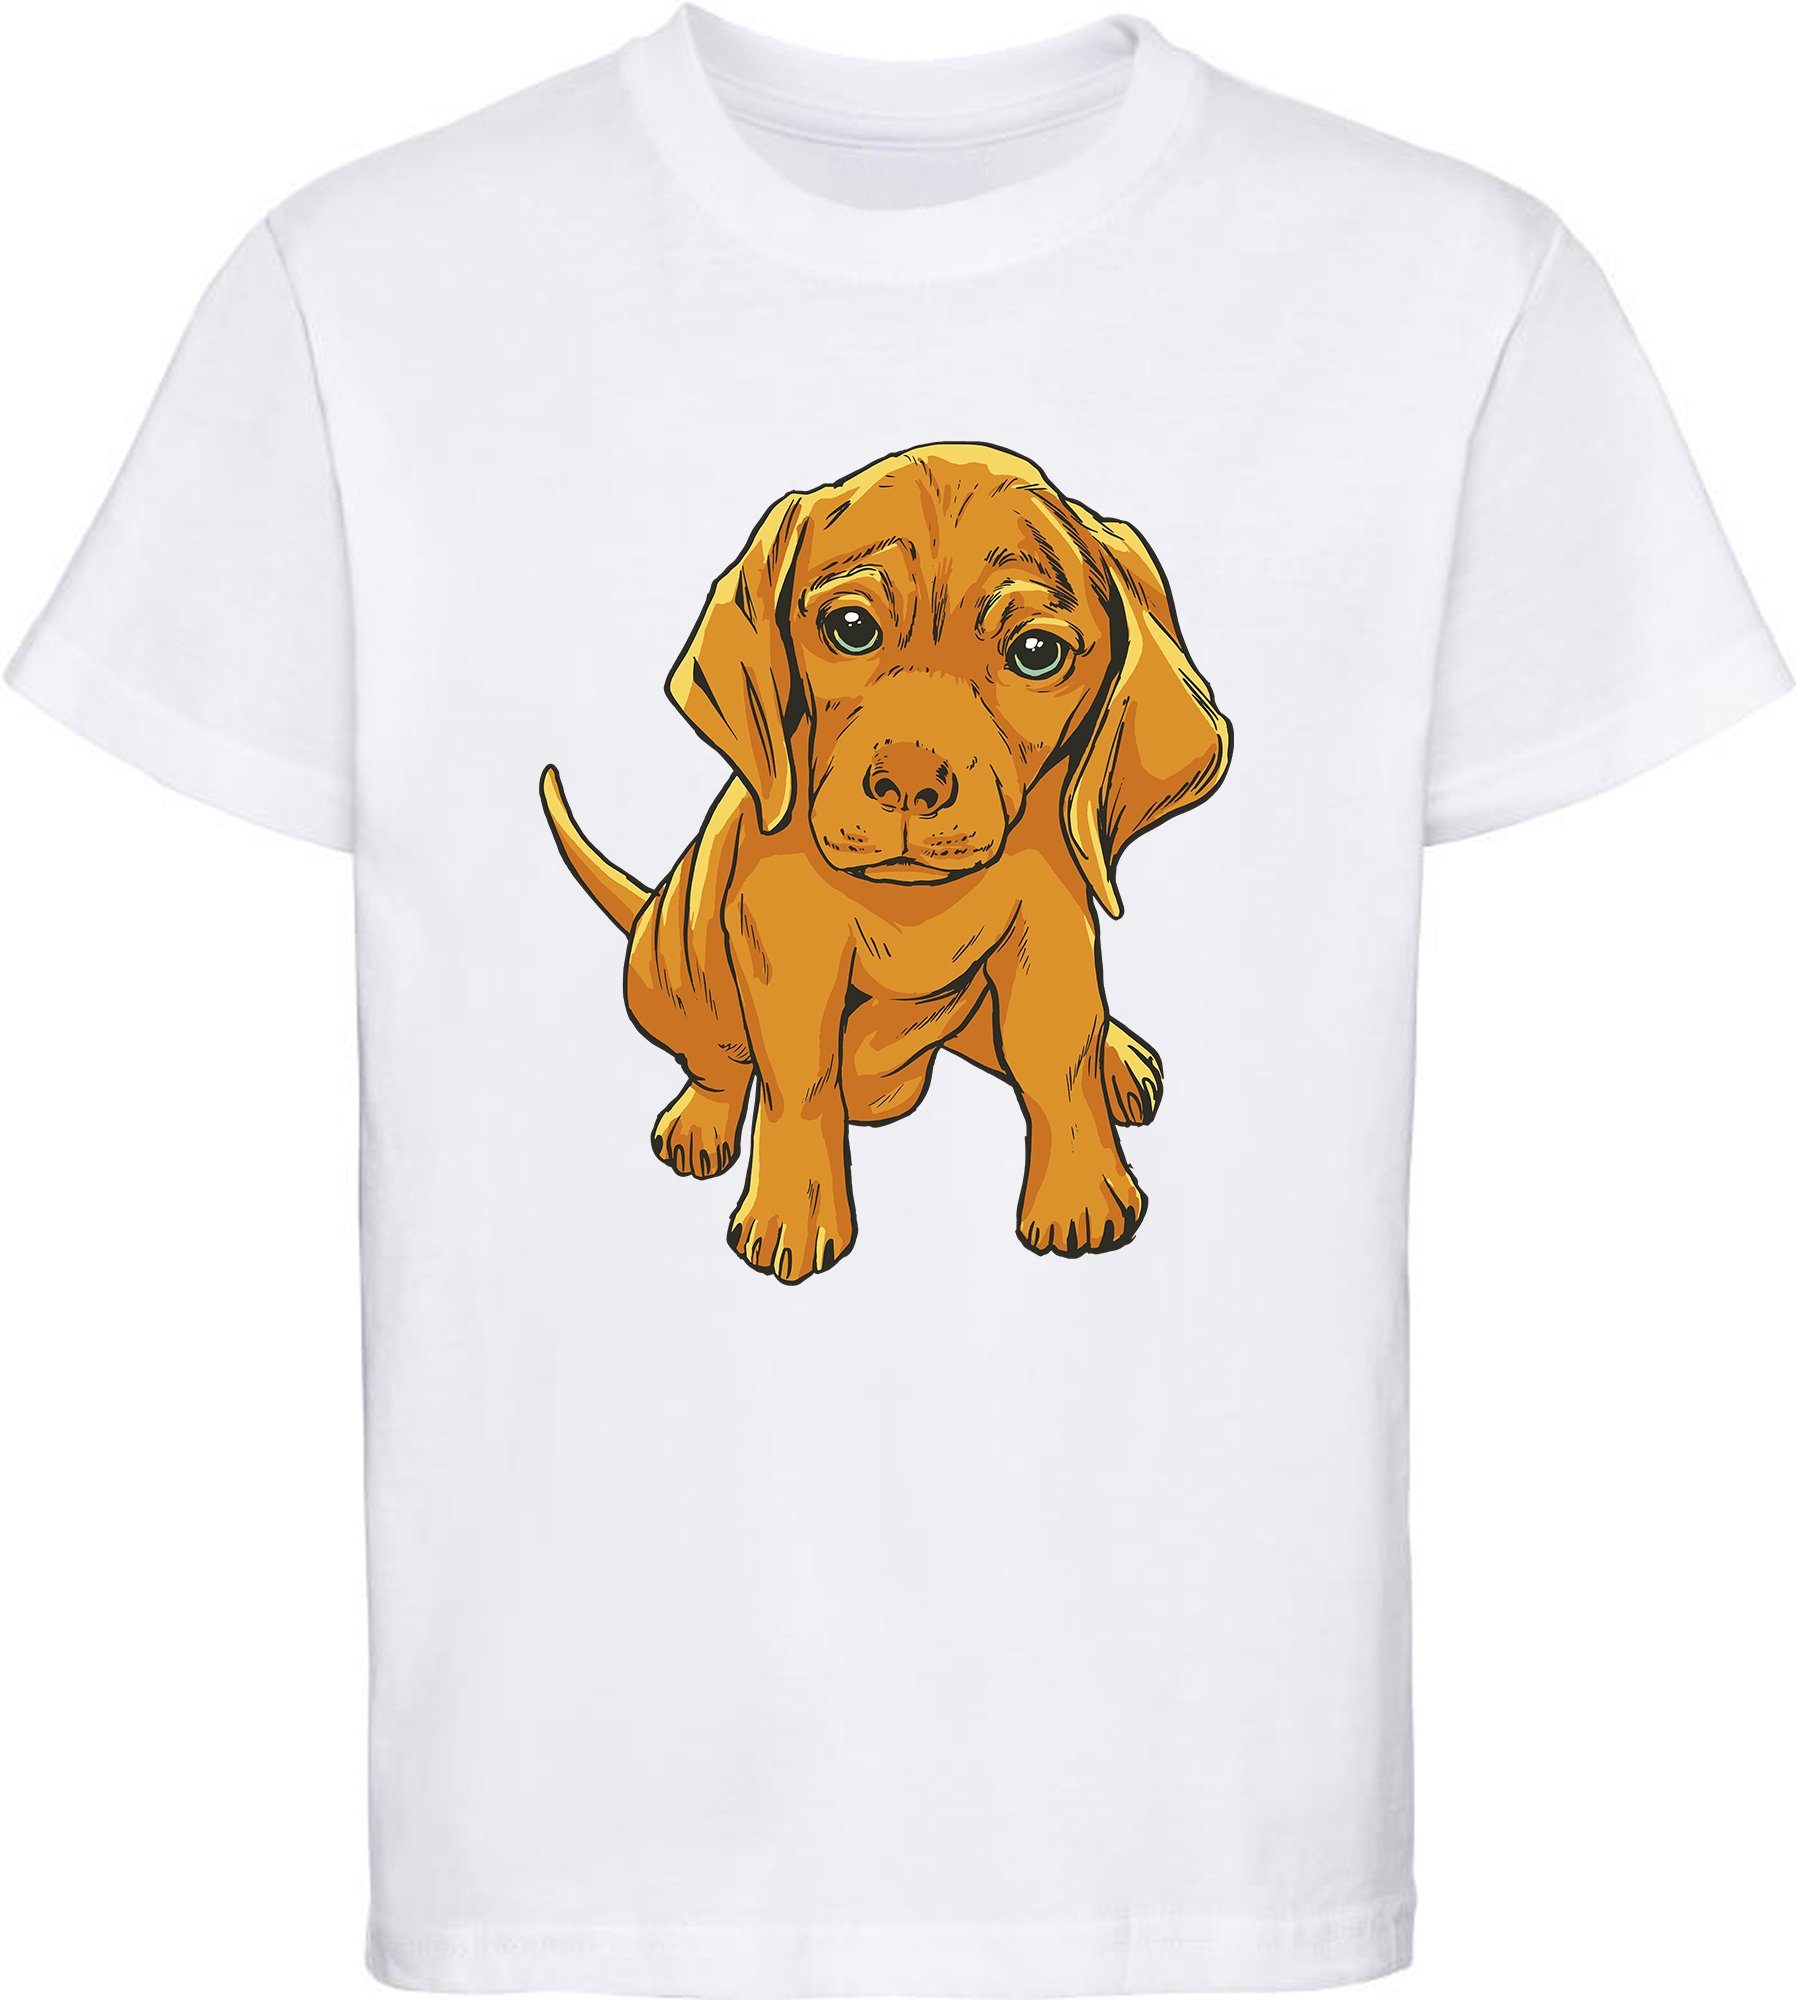 MyDesign24 Print-Shirt Kinder Hunde T-Shirt bedruckt - Süßer Welpe Baumwollshirt mit Aufdruck, i230 weiss